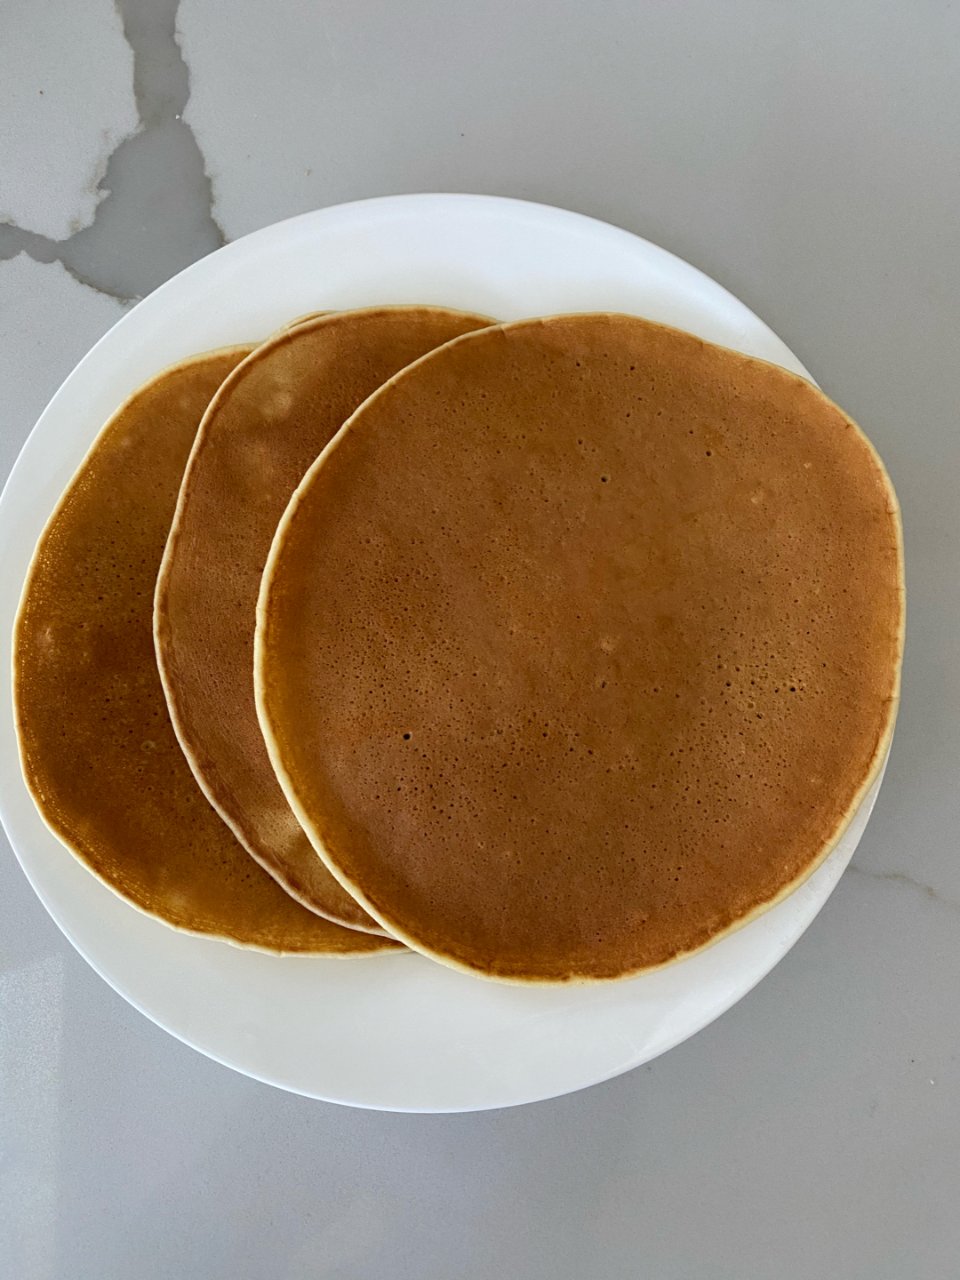 非常简单的pancake 但是真的好吃😋...